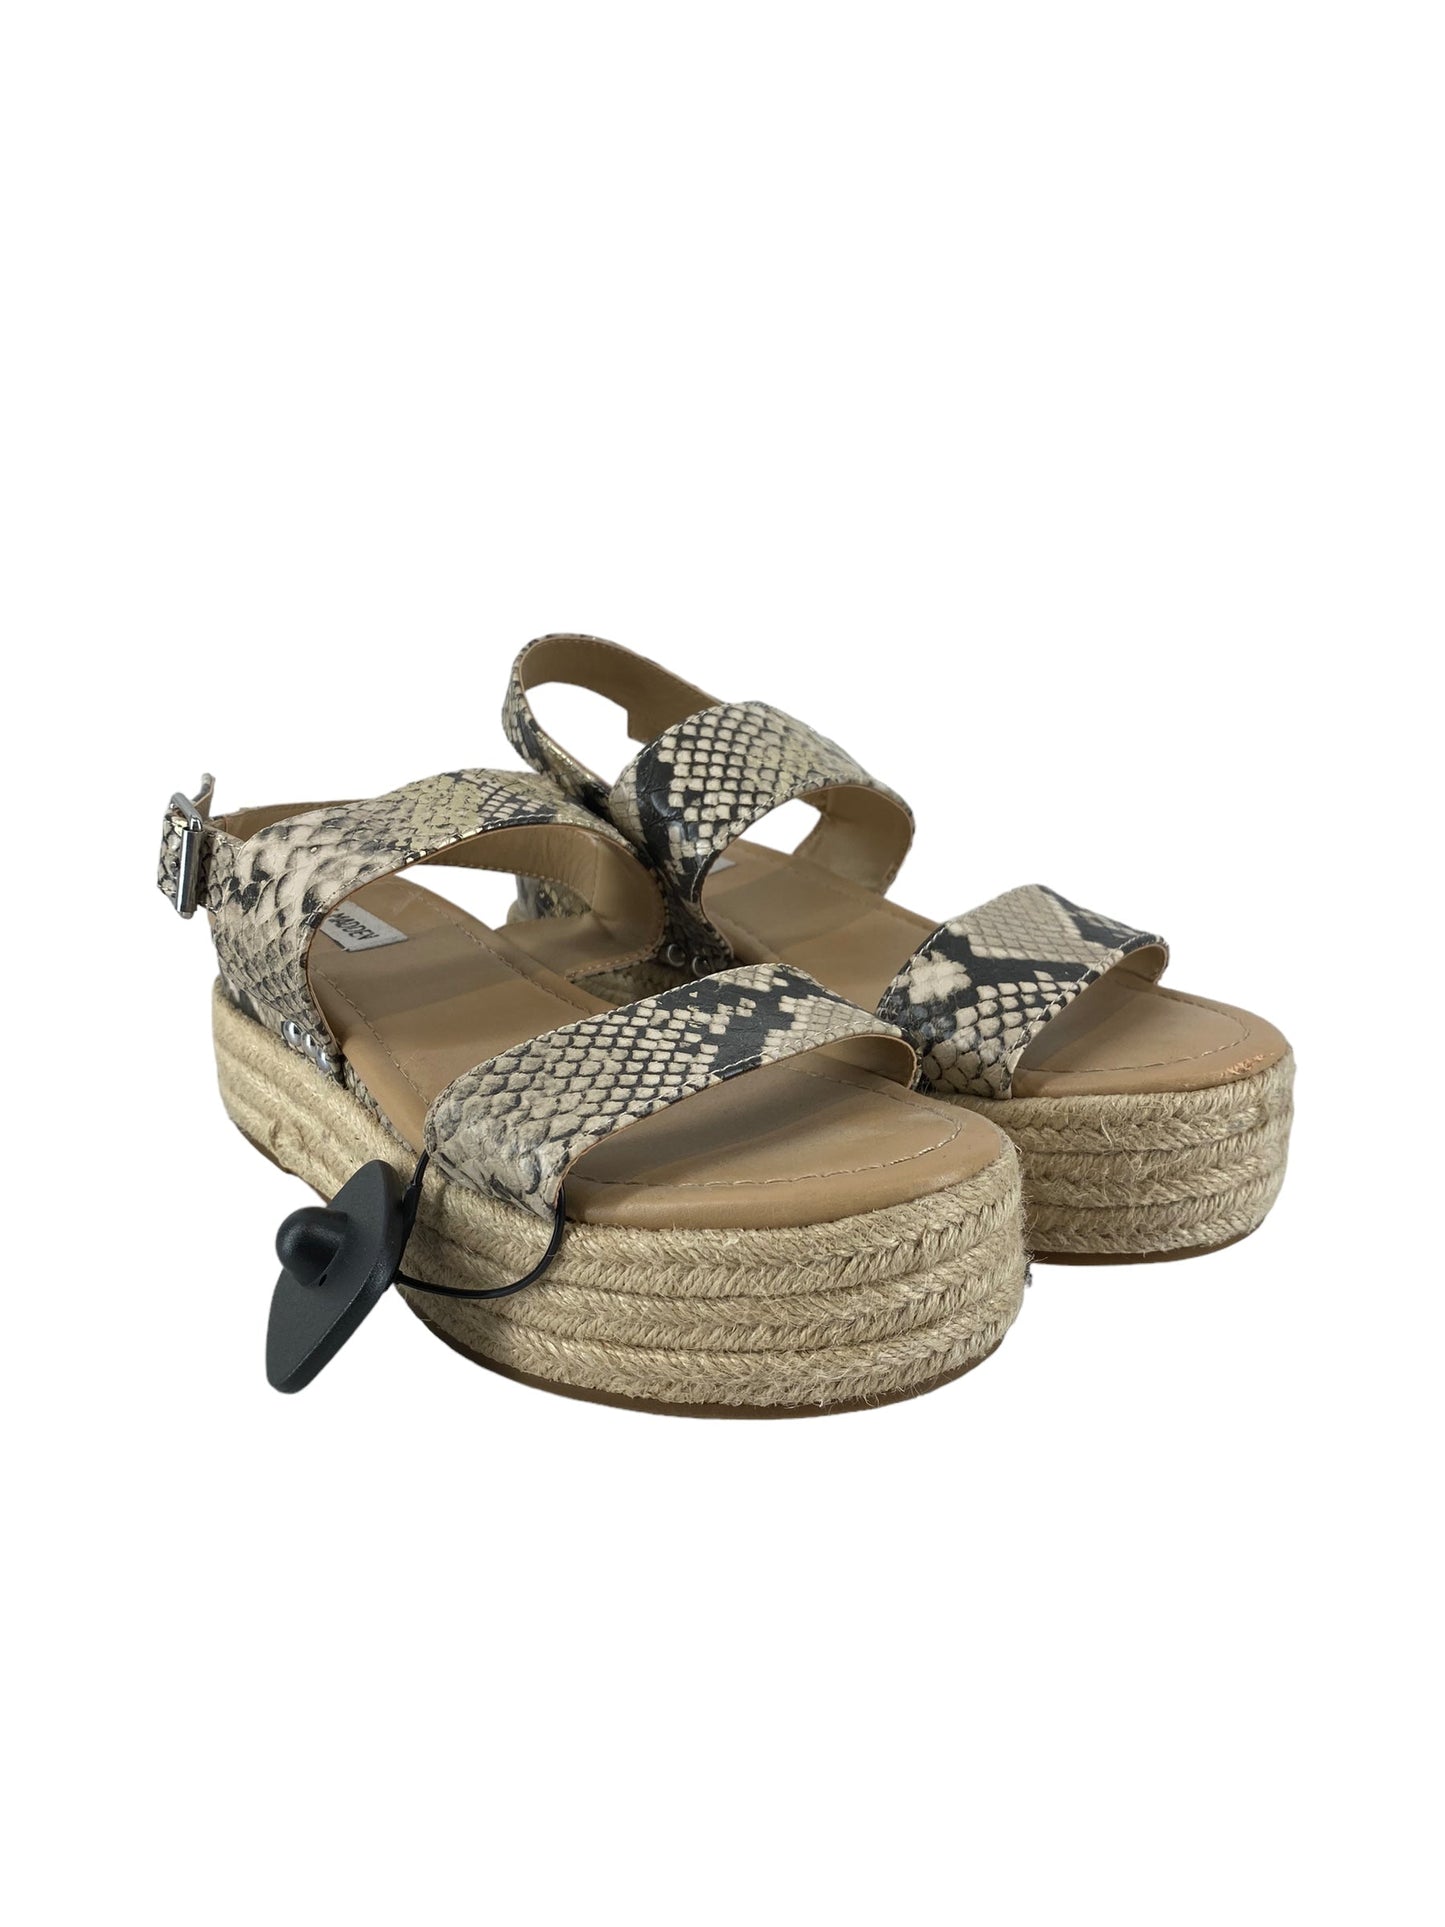 Snakeskin Print Sandals Heels Platform Steve Madden, Size 8.5